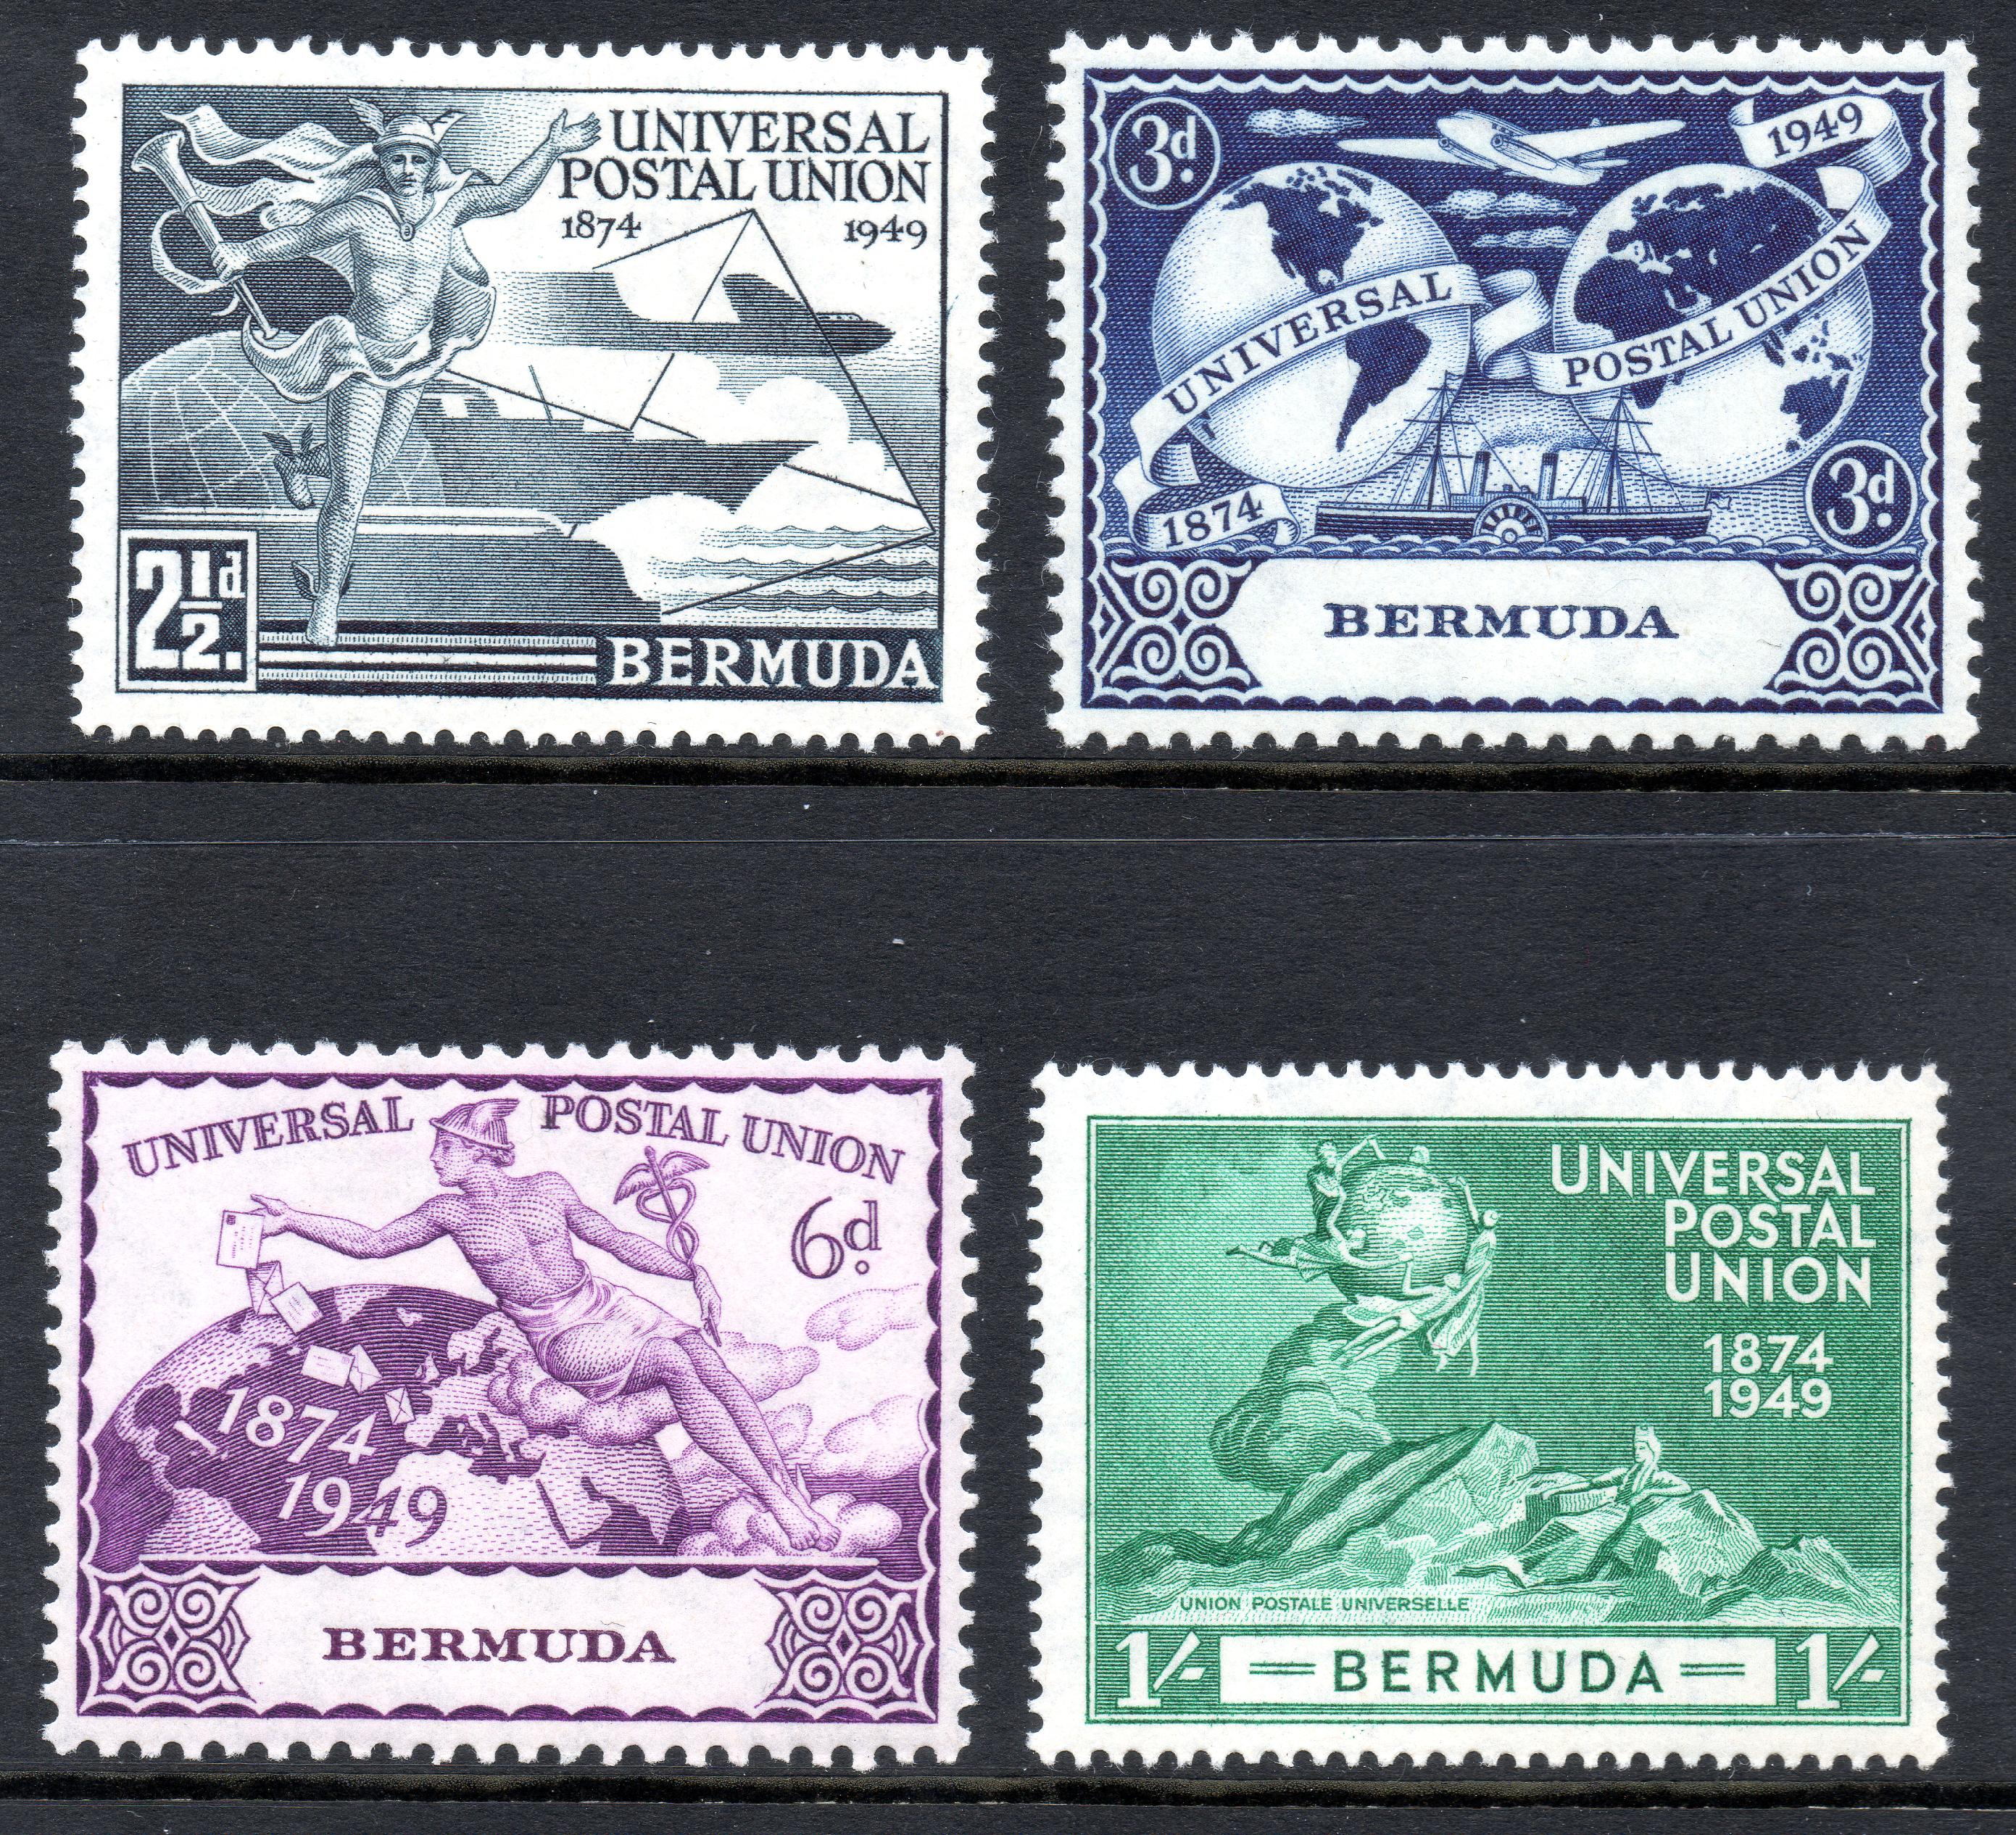 1949 UPU stamps of Bermuda